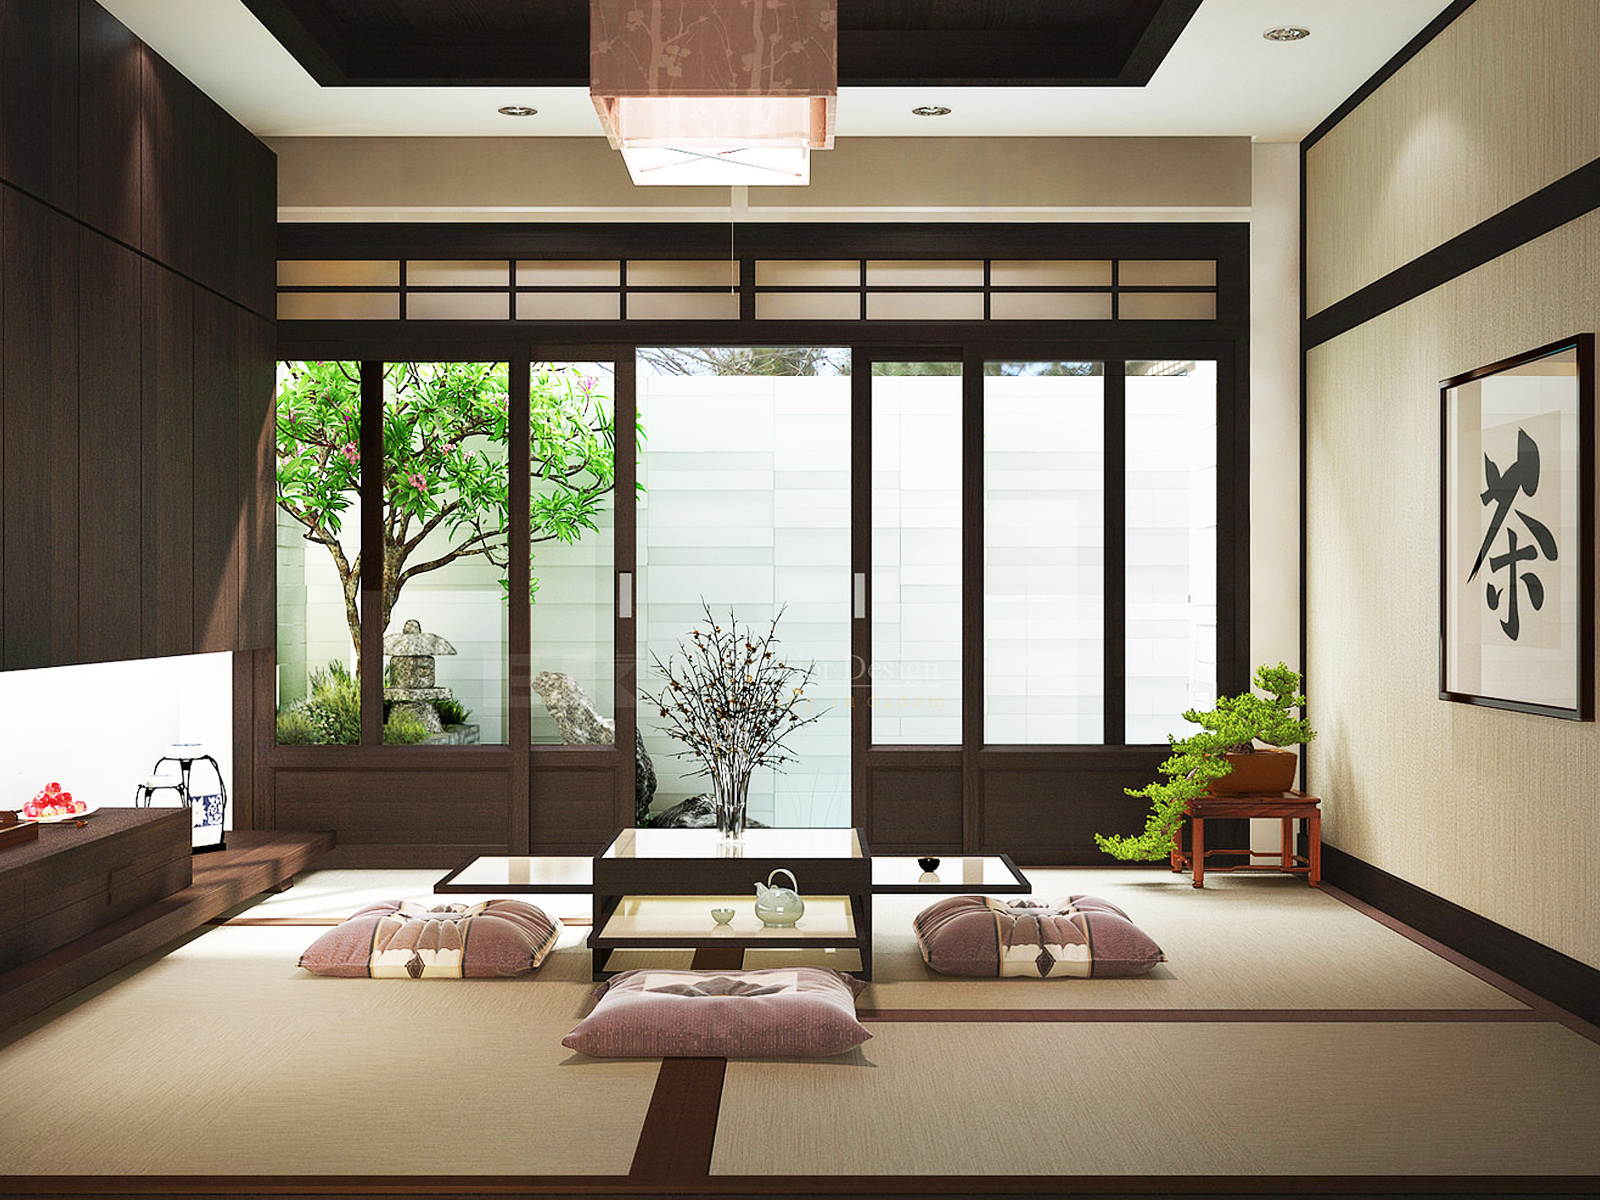 Giới thiệu về nội thất Nhật Bản và các nét đặc trưng?